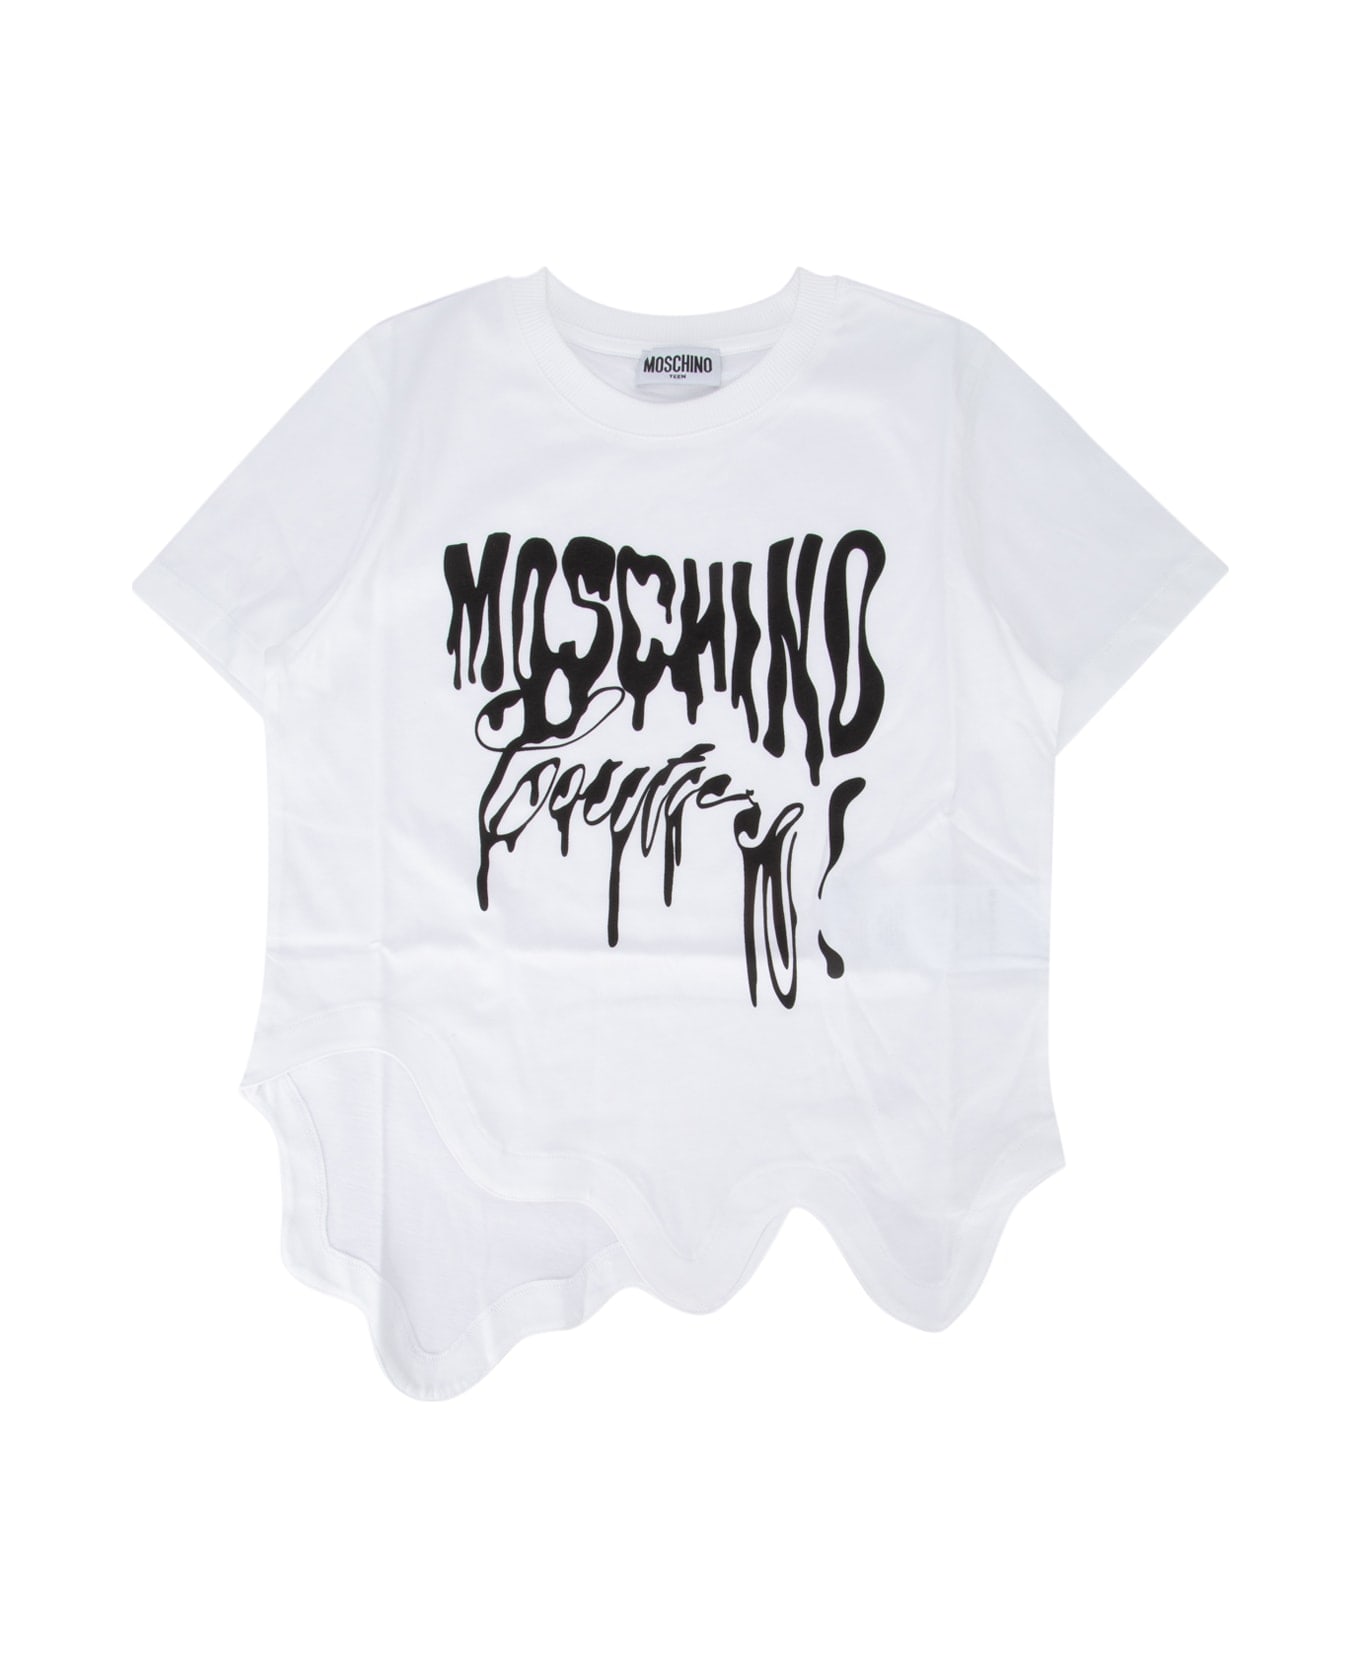 Moschino T-shirt - BIANCOOTTI